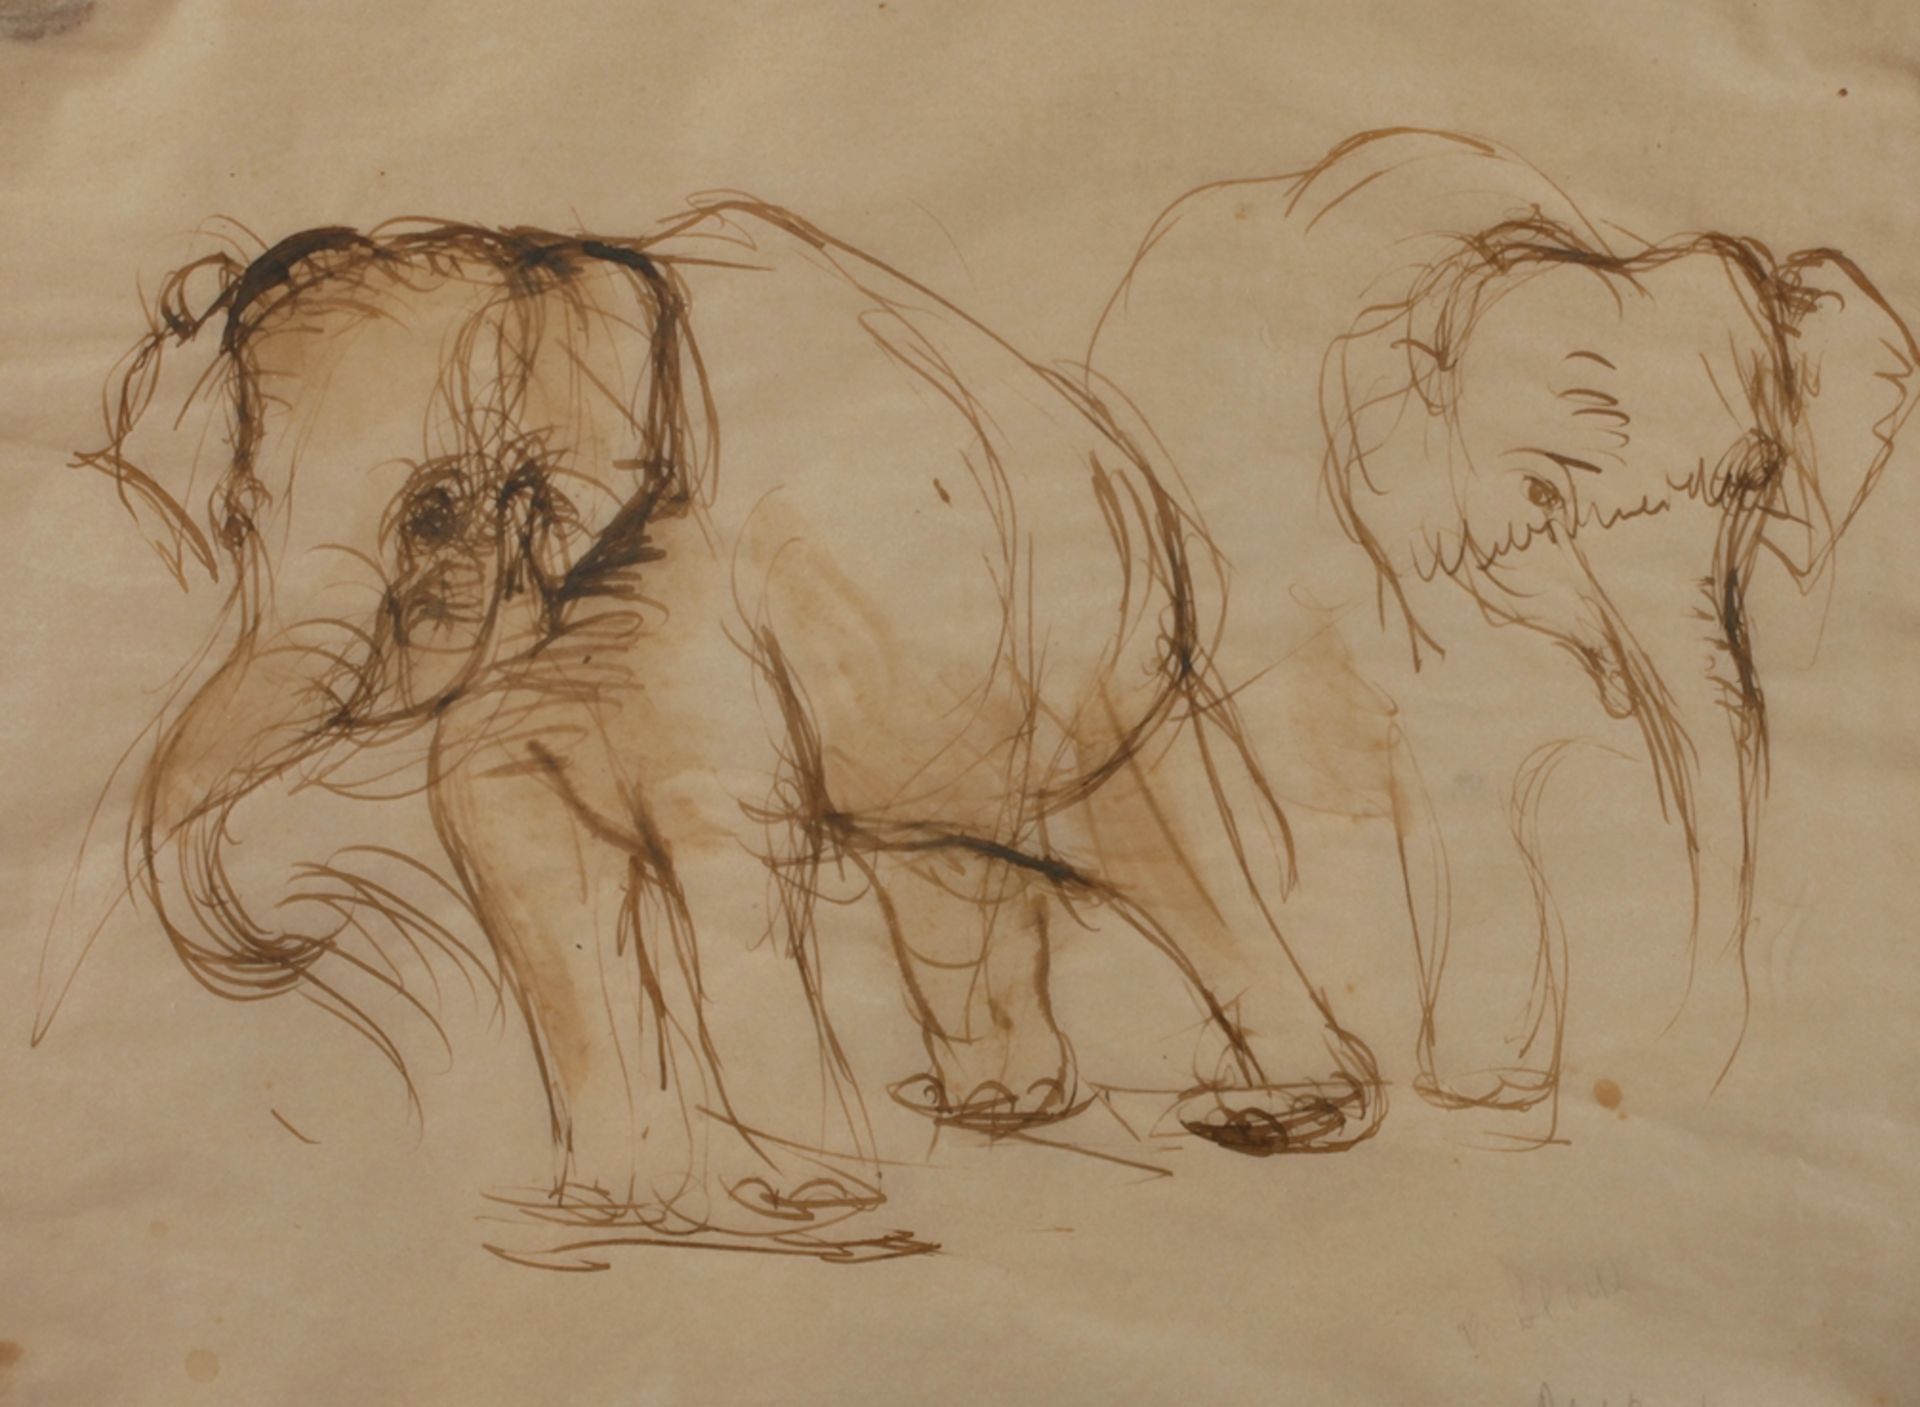 Adelaid von Block-Quast, Tierstudie mit ElefantenDarstellung zweier gehender Elefanten, mit lockerem